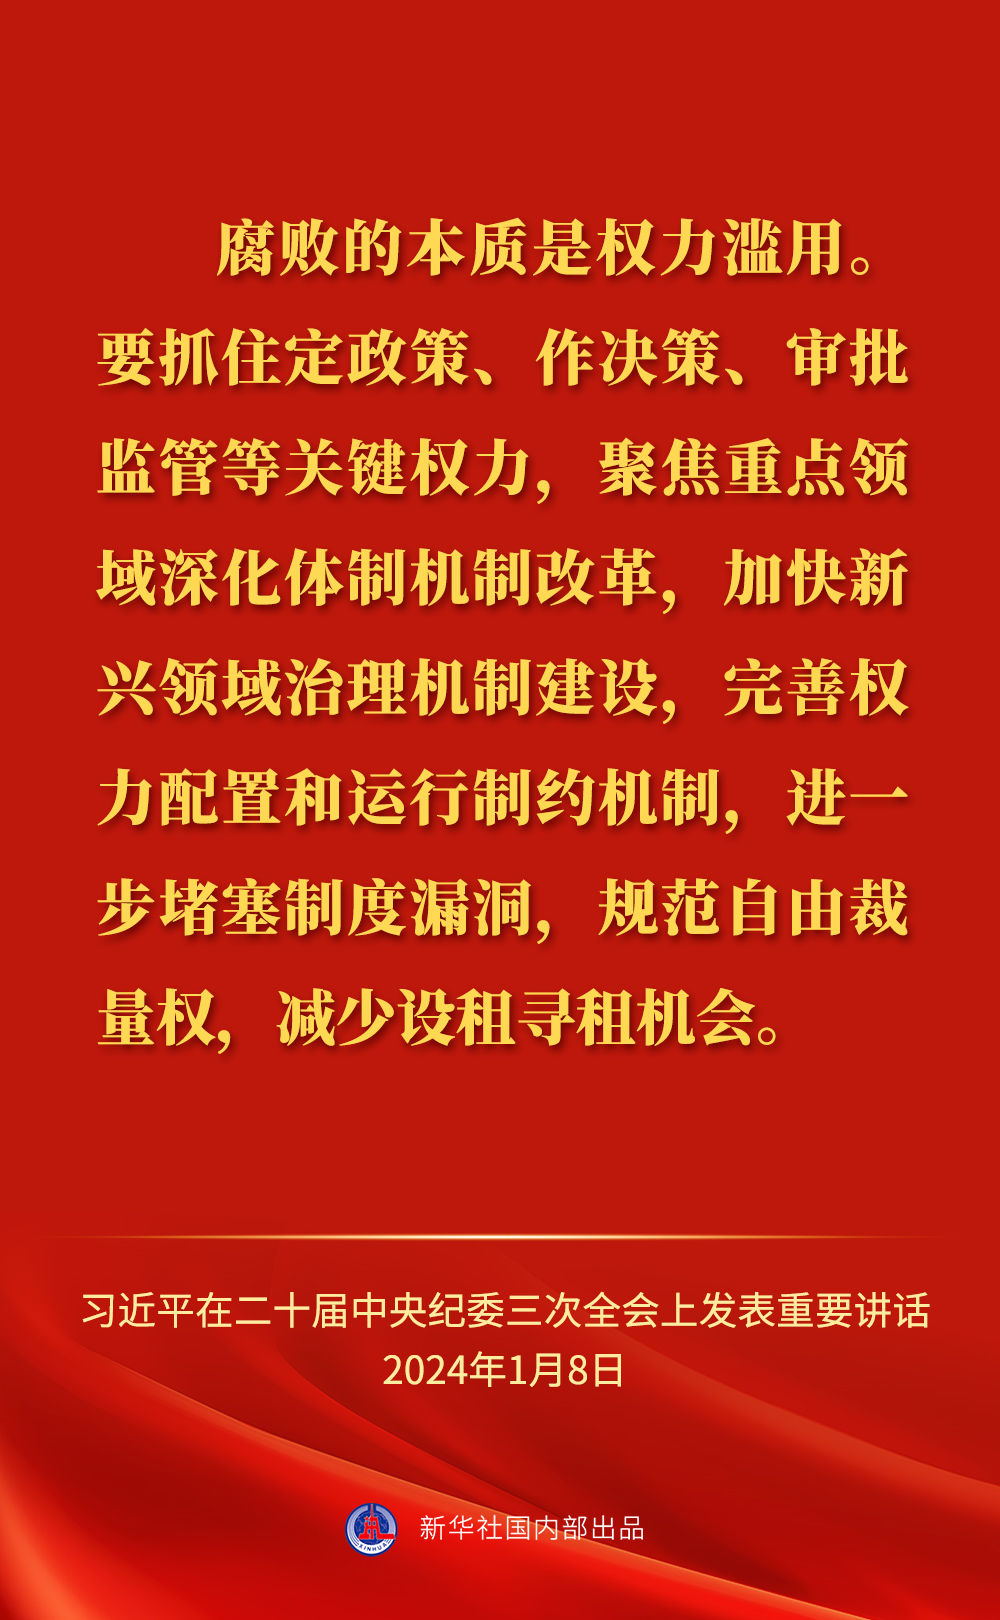 习近平总书记在二十届中央纪委三次全会上的重要讲话金句